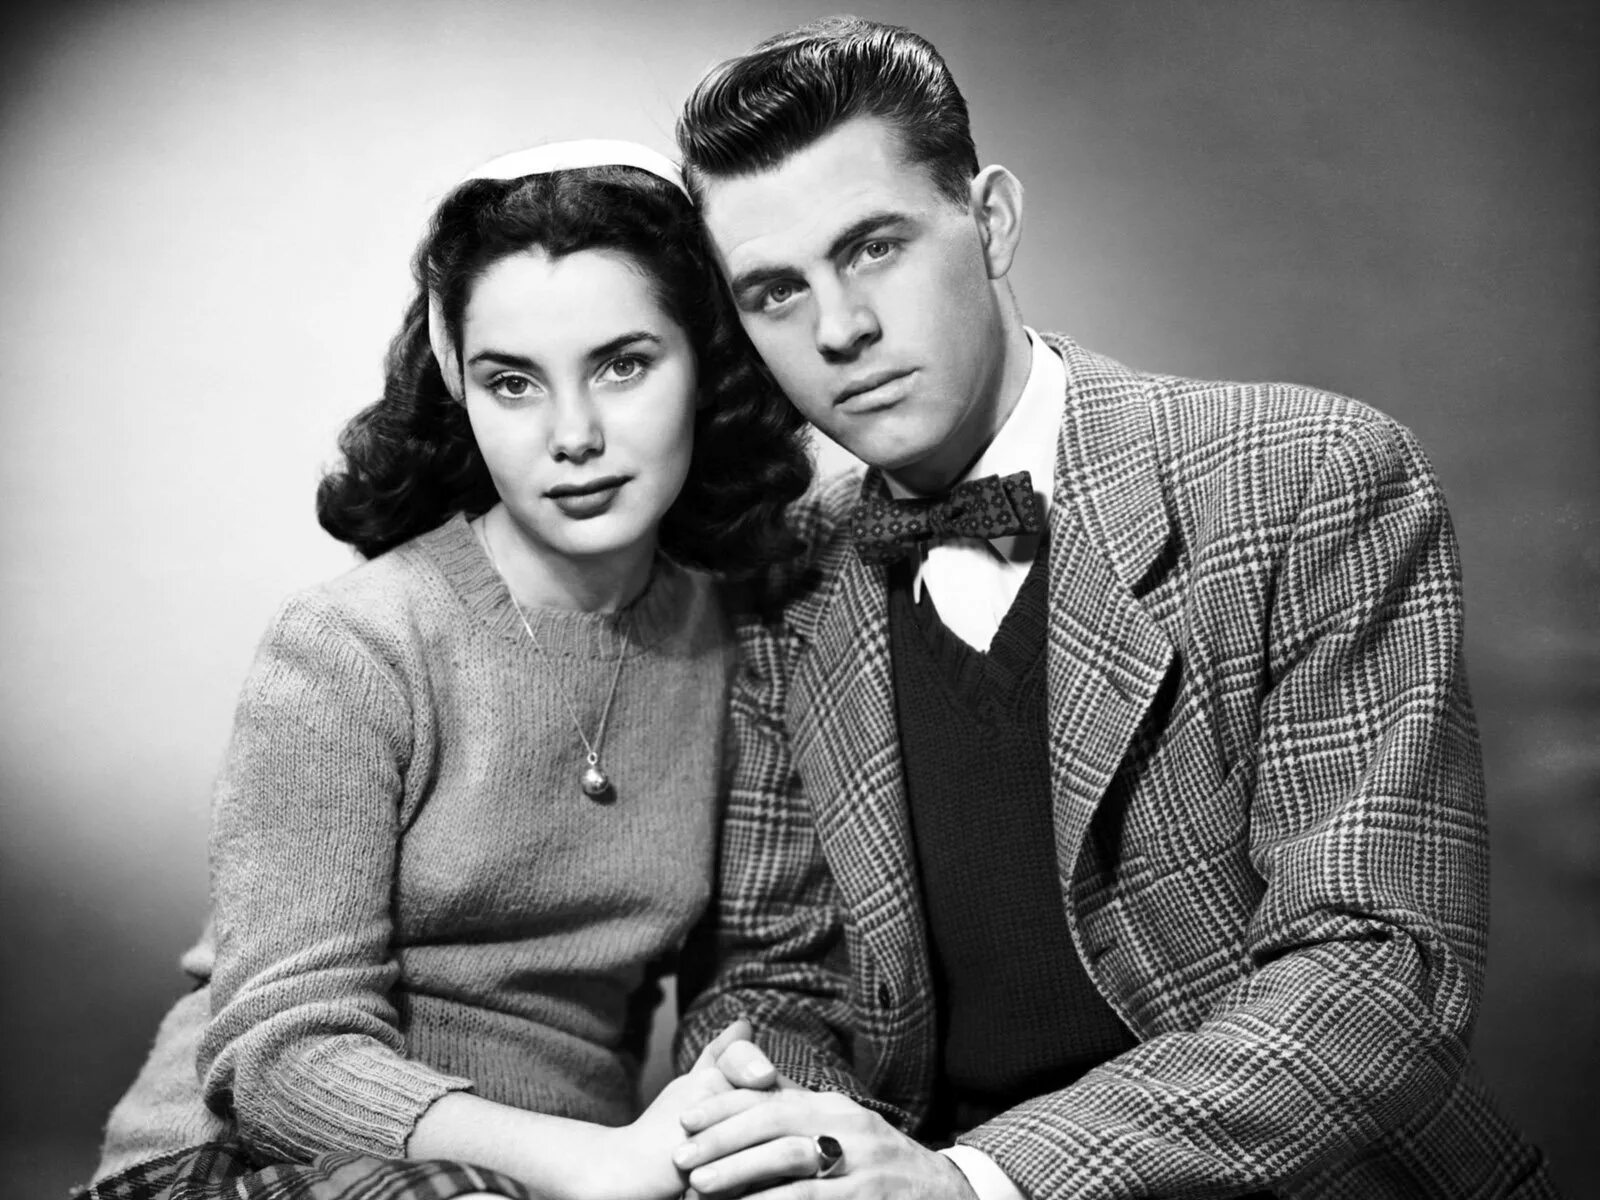 Vk com ретро. Пары в стиле ретро. Мужчина и женщина ретро. Фотопортрет в стиле ретро. Фотосессия в стиле 50-х годов.